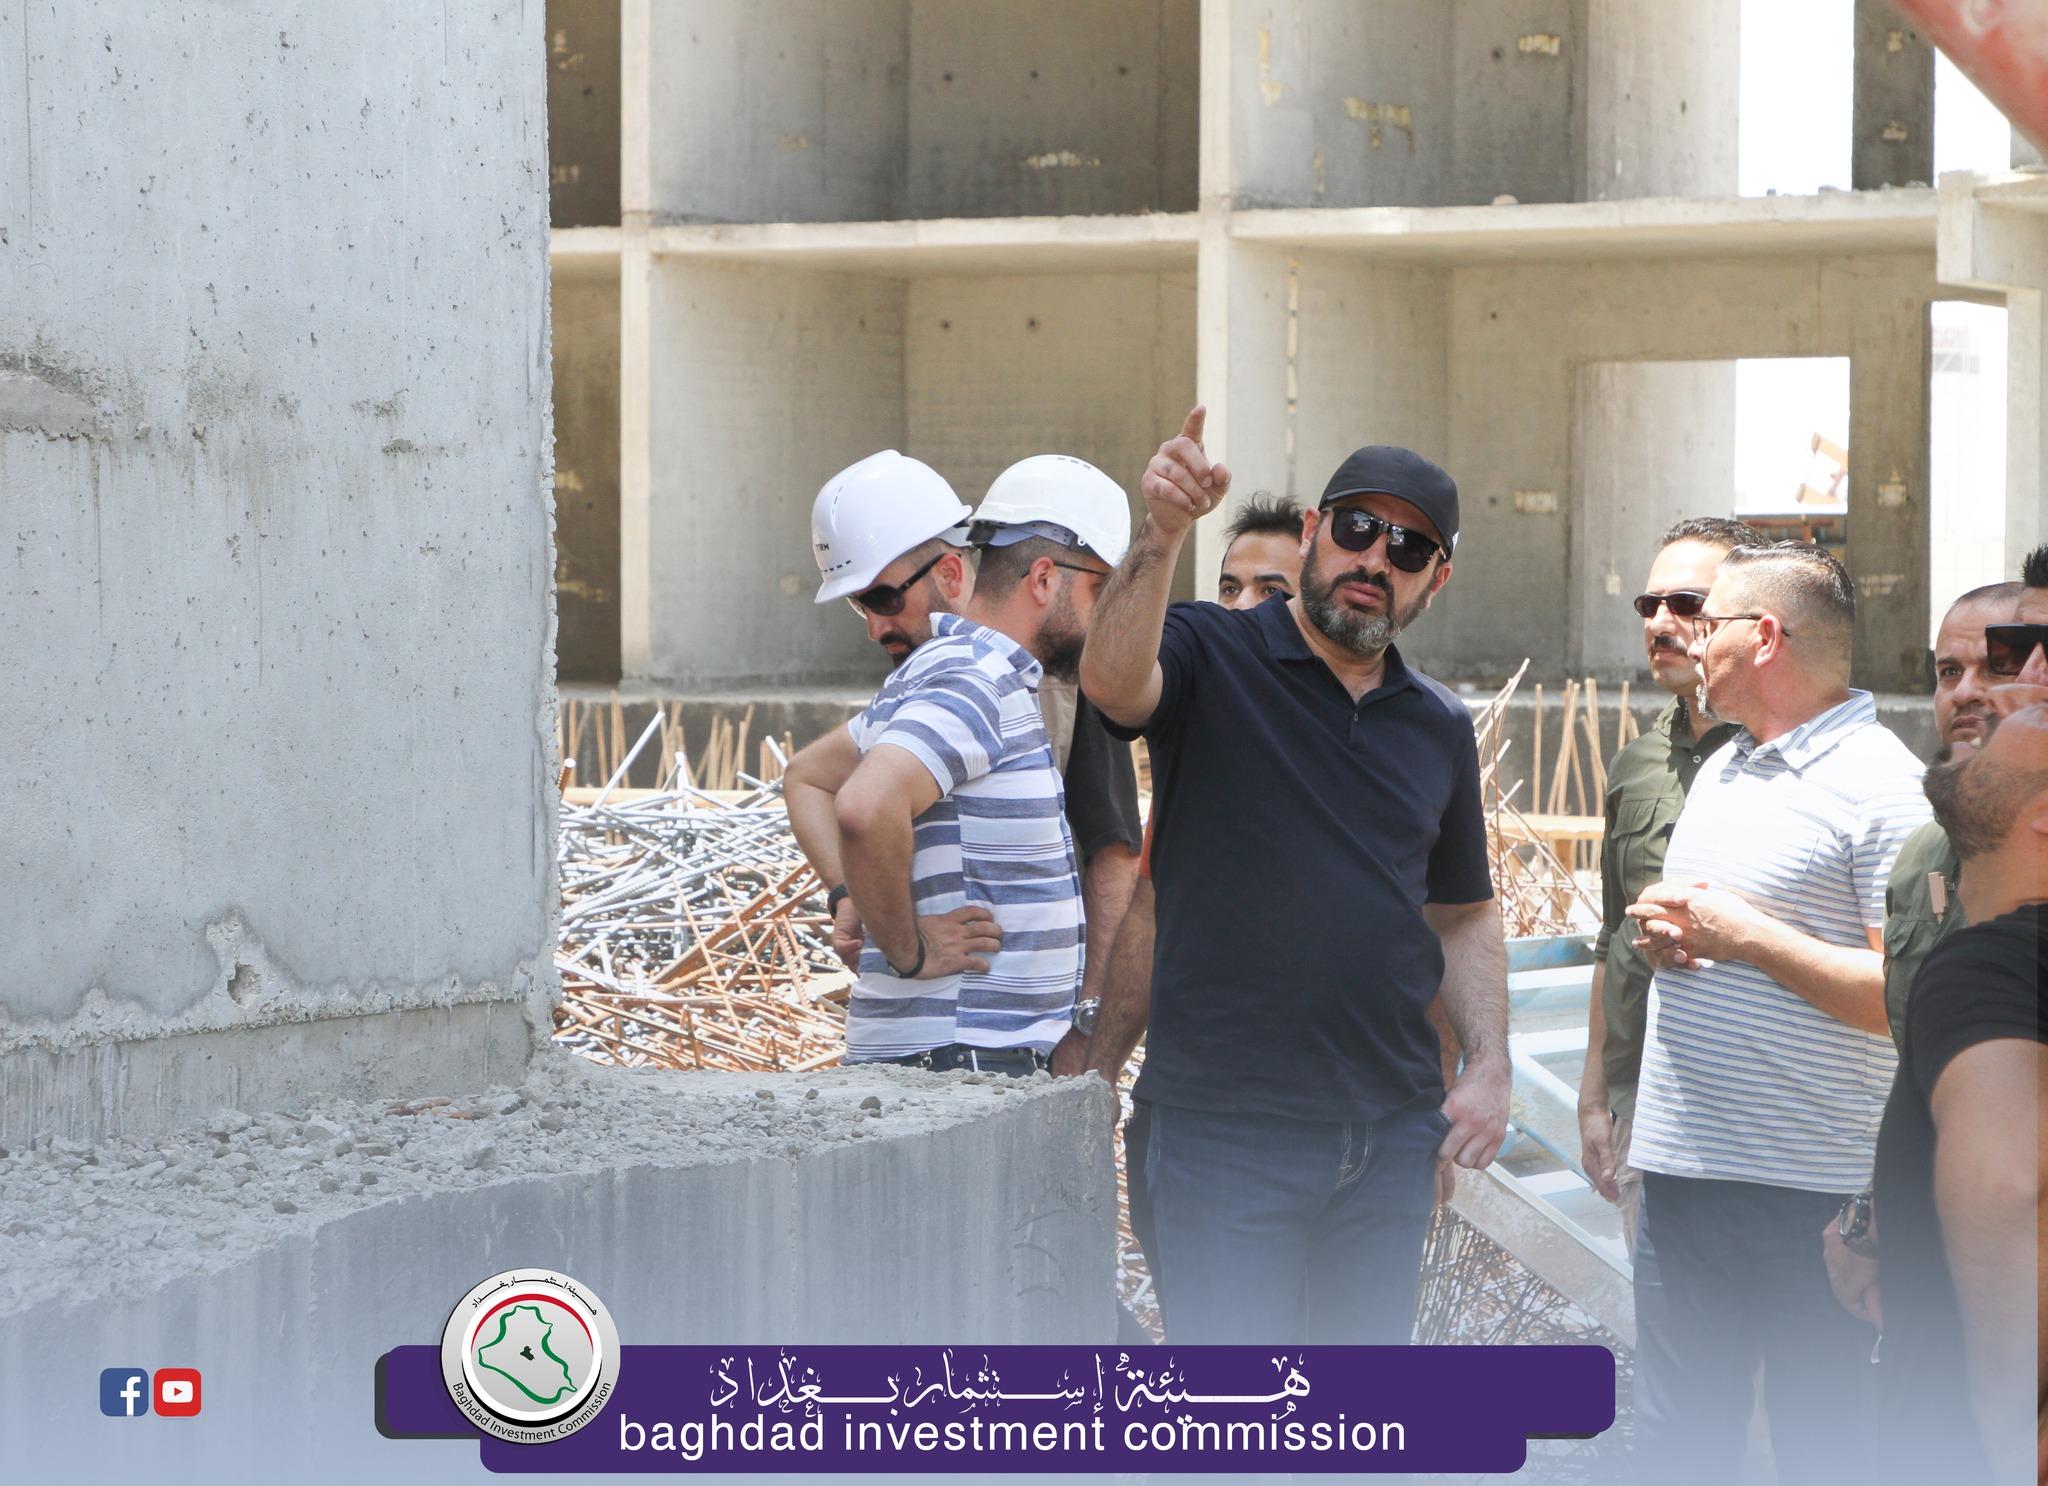 إستثمار بغداد : زيارة ميدانية لعدد من المشاريع الإستثمارية وتوجيهات جديدة بالإنذار وس